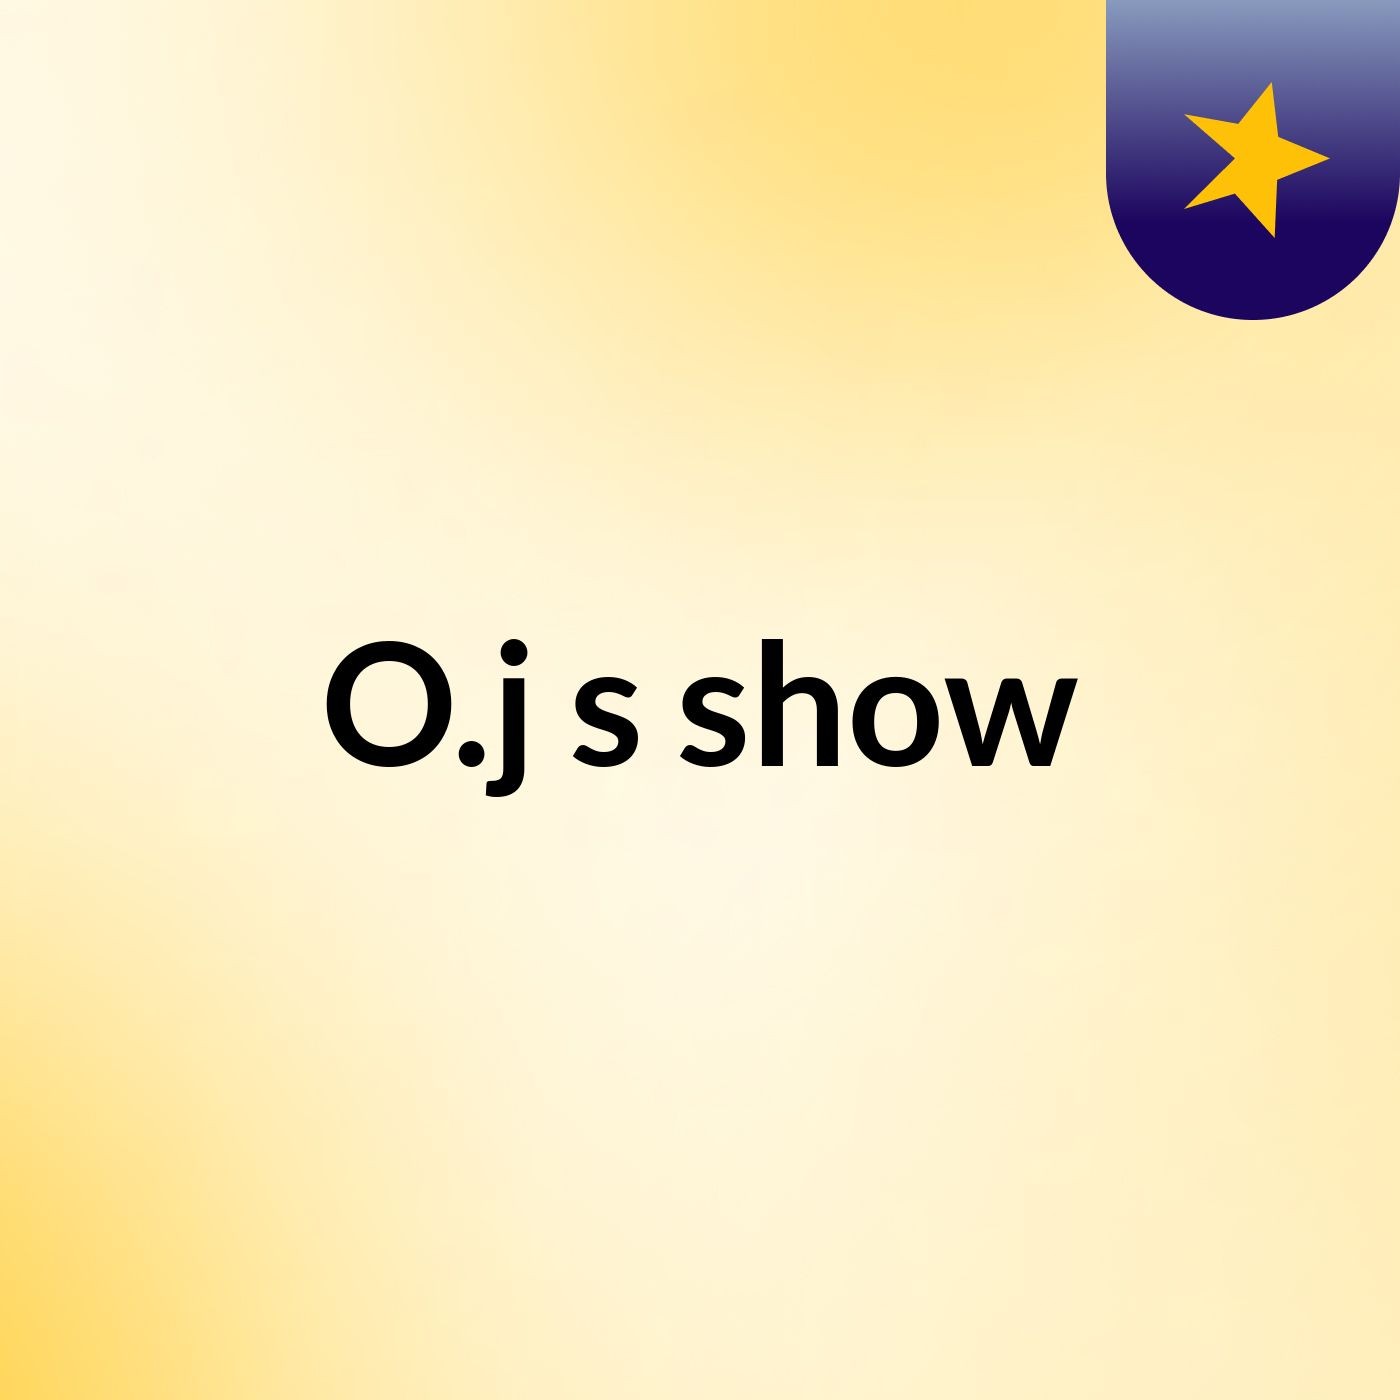 O.j's show